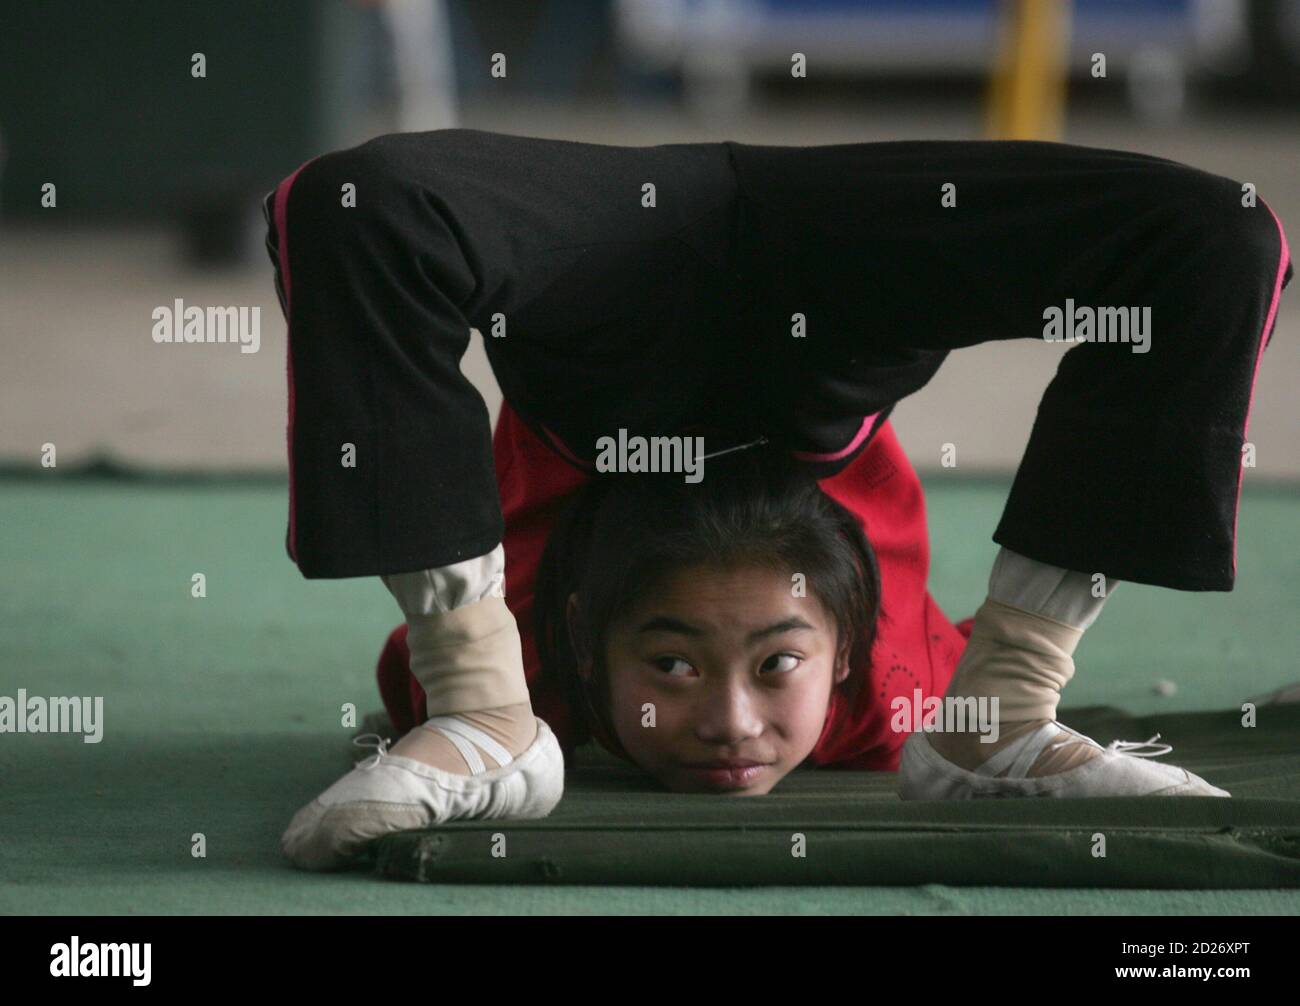 Un giovane contorsionista pratica durante una sessione di formazione in una scuola locale di acrobazie a Zhengzhou, provincia di Henan 24 aprile 2009. Circa 20 studenti, di età compresa tra 5 e 15 anni, ricevono una formazione presso la scuola che spera di esibirsi sul palco dopo 3 o 4 anni di pratica per fare un vivo, i media locali riportati. Foto scattata il 24 aprile 2009. REUTERS/Eric Zhao (SOCIETÀ DELL'EDUCAZIONE CINESE SPORT) Foto Stock